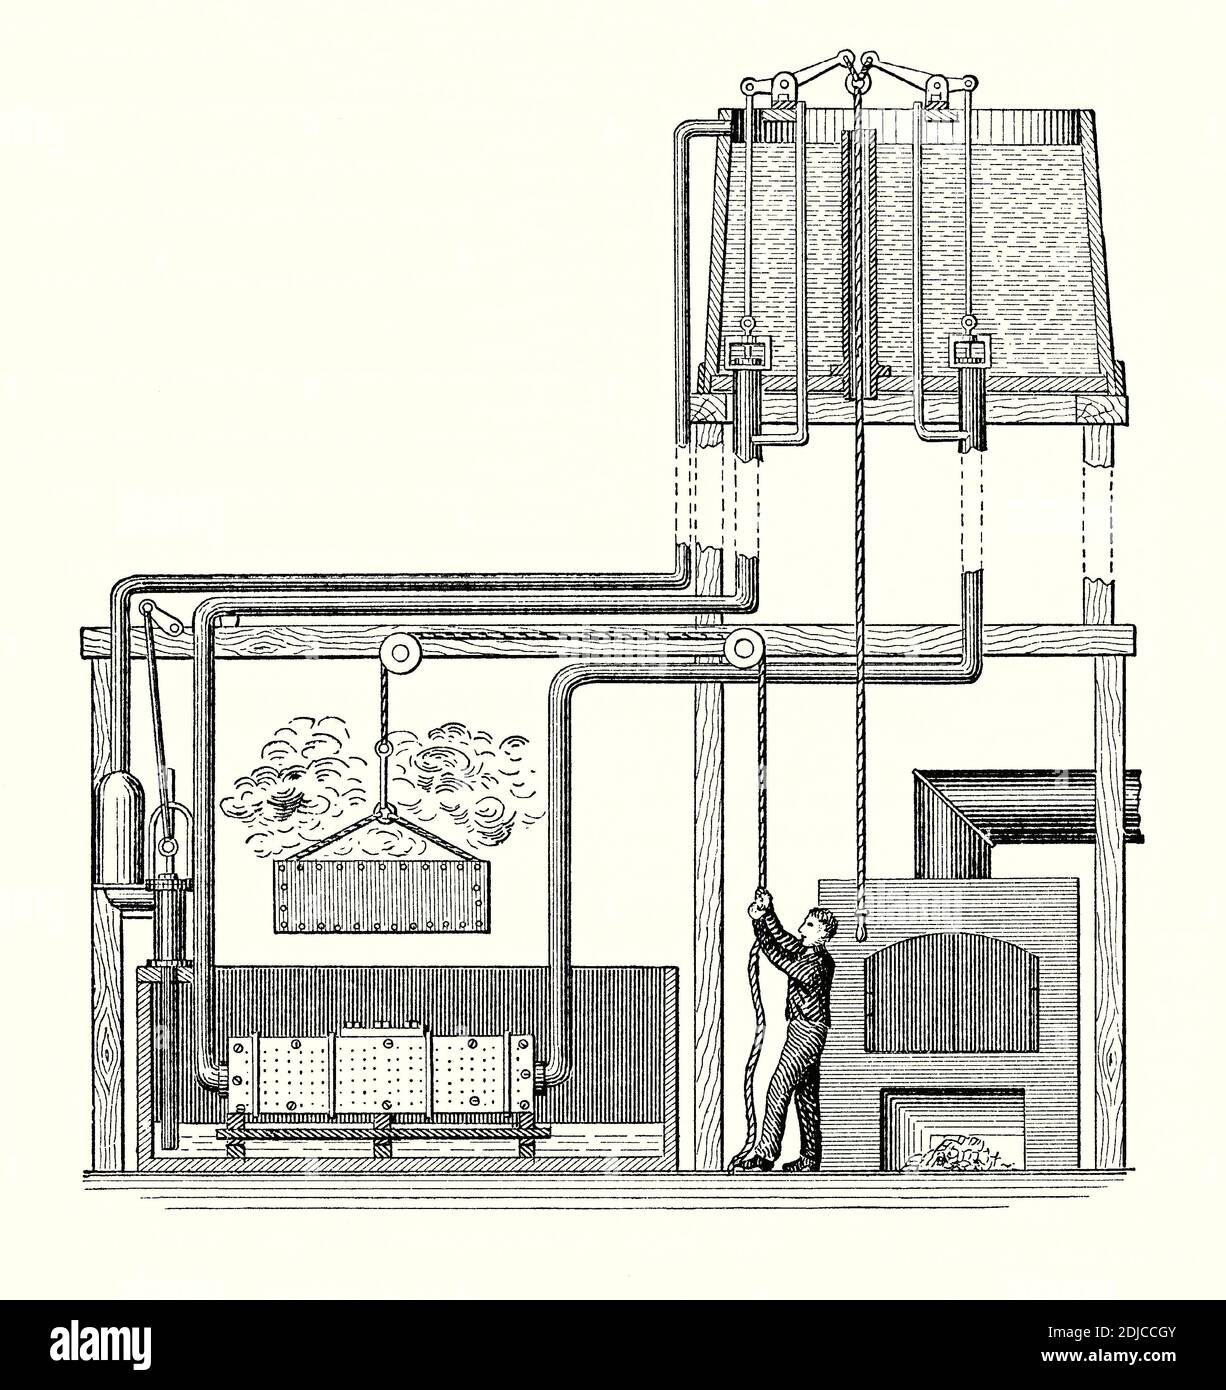 Una vecchia incisione della ‘temperatrice Urbana’ del 1800. E 'da un libro di ingegneria meccanica vittoriana del 1880. Il termine acciaio temprato viene spesso usato per un acciaio a medio o alto tenore di carbonio che è stato sottoposto a trattamento termico e quindi a raffreddamento rapido seguito da tempra. Qui una piastra di acciaio calda viene abbassata in un serbatoio. L'acqua salata è contenuta in un serbatoio (in alto a destra) – una valvola viene aperta e i getti d'acqua giocano contro entrambi i lati della piastra. Una pompa (sinistra) riporta l'acqua nel serbatoio. La tempra è stata spesso confusa con la tempra – il termine è stato usato per descrivere entrambi. Foto Stock